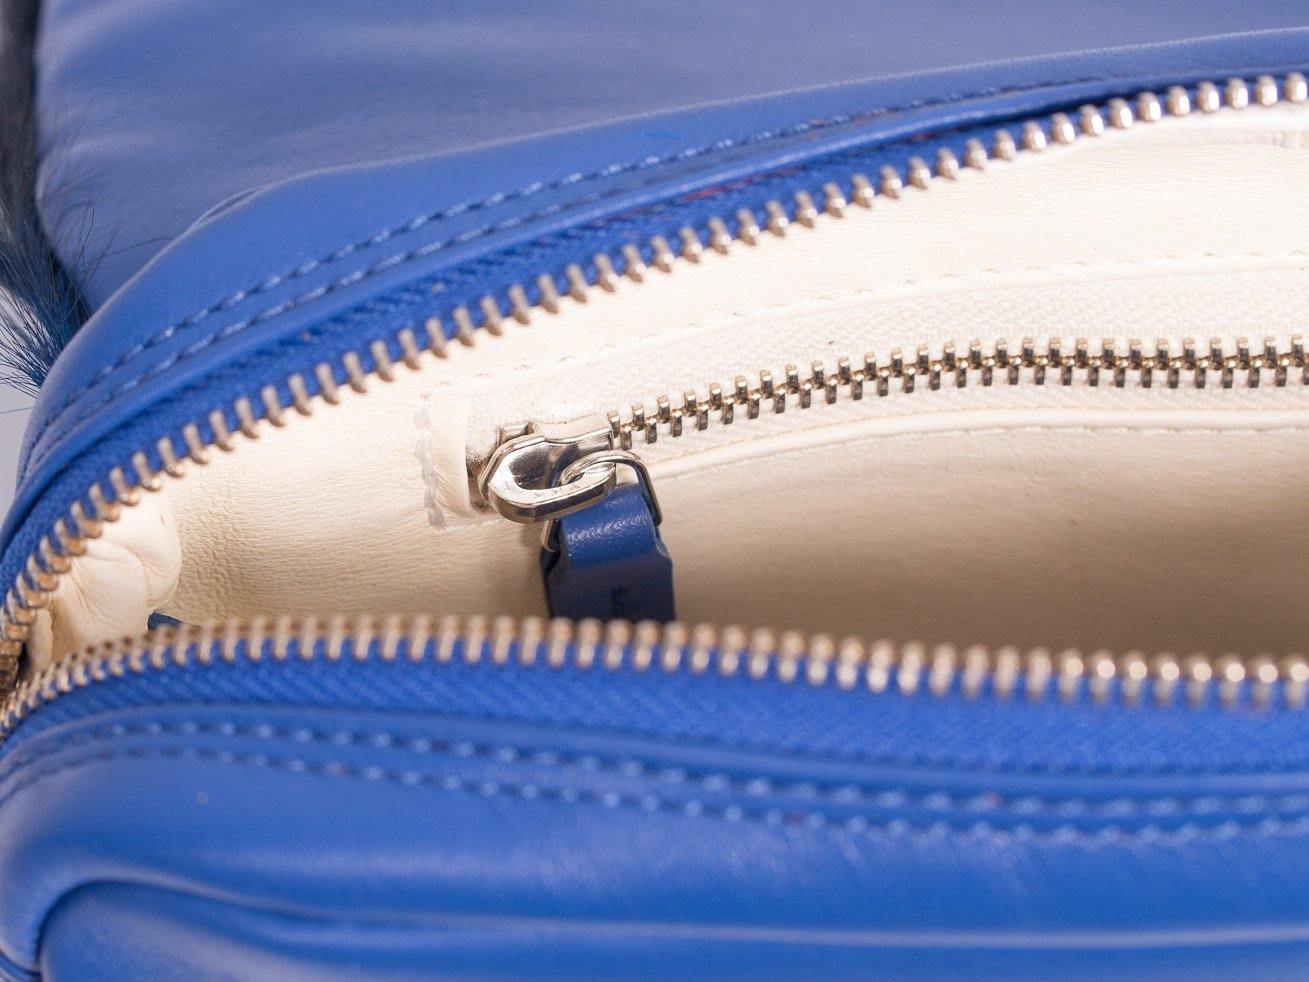 sherene melinda springbok hair-on-hide royal blue leather shoulder bag Stripe inside